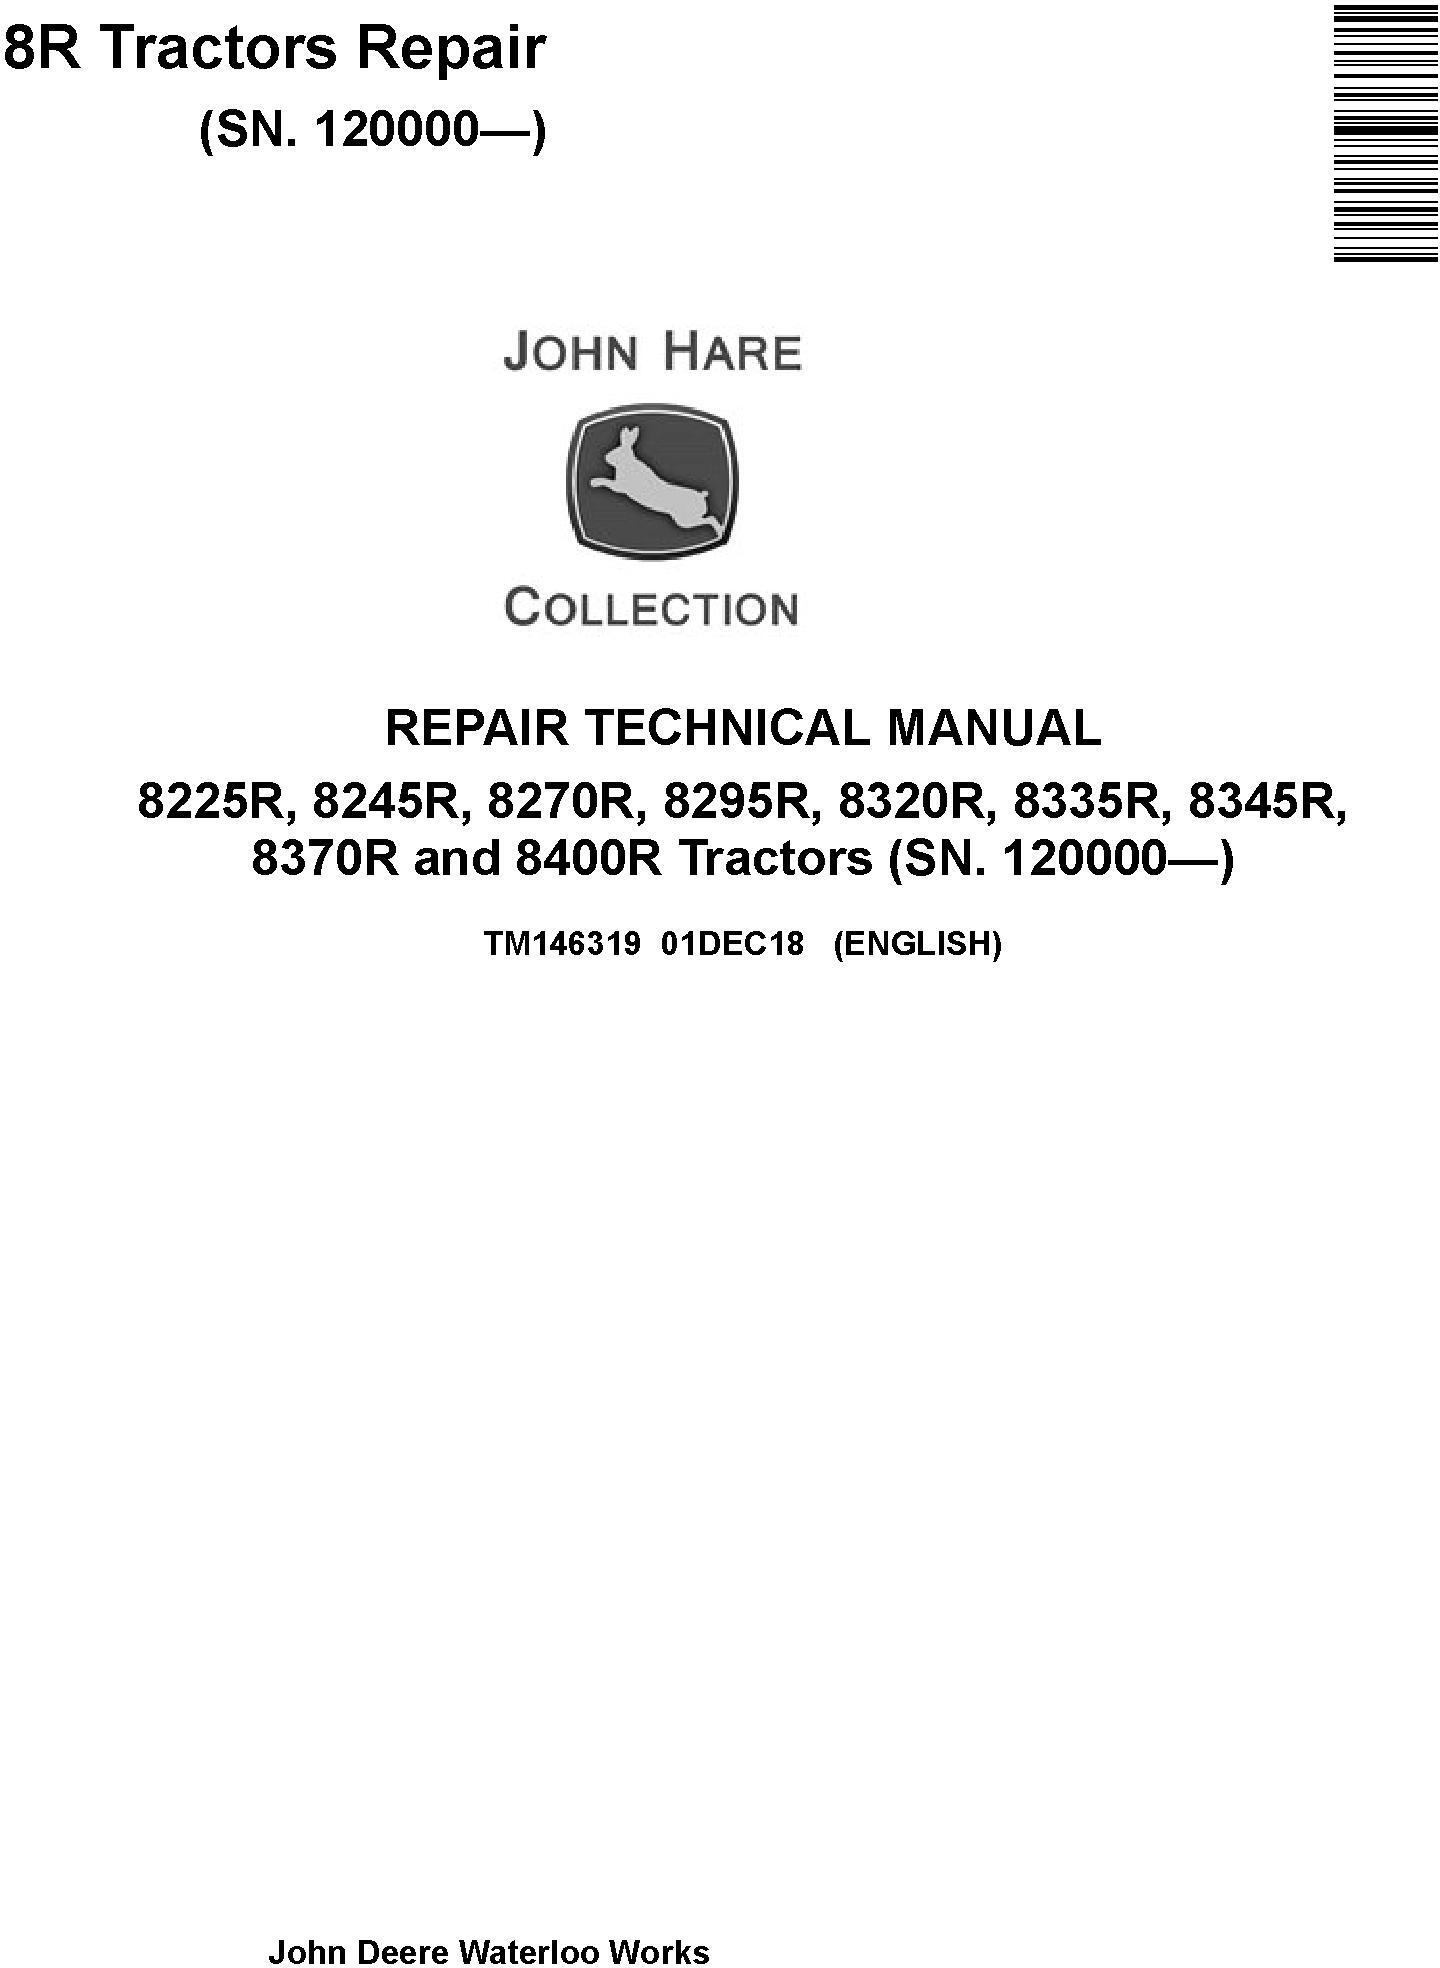 John Deere 8225R 8245R 8270R 8295R 8320R 8335R 8345R 8370R 8400R Tractors Repair Manual (TM146319)